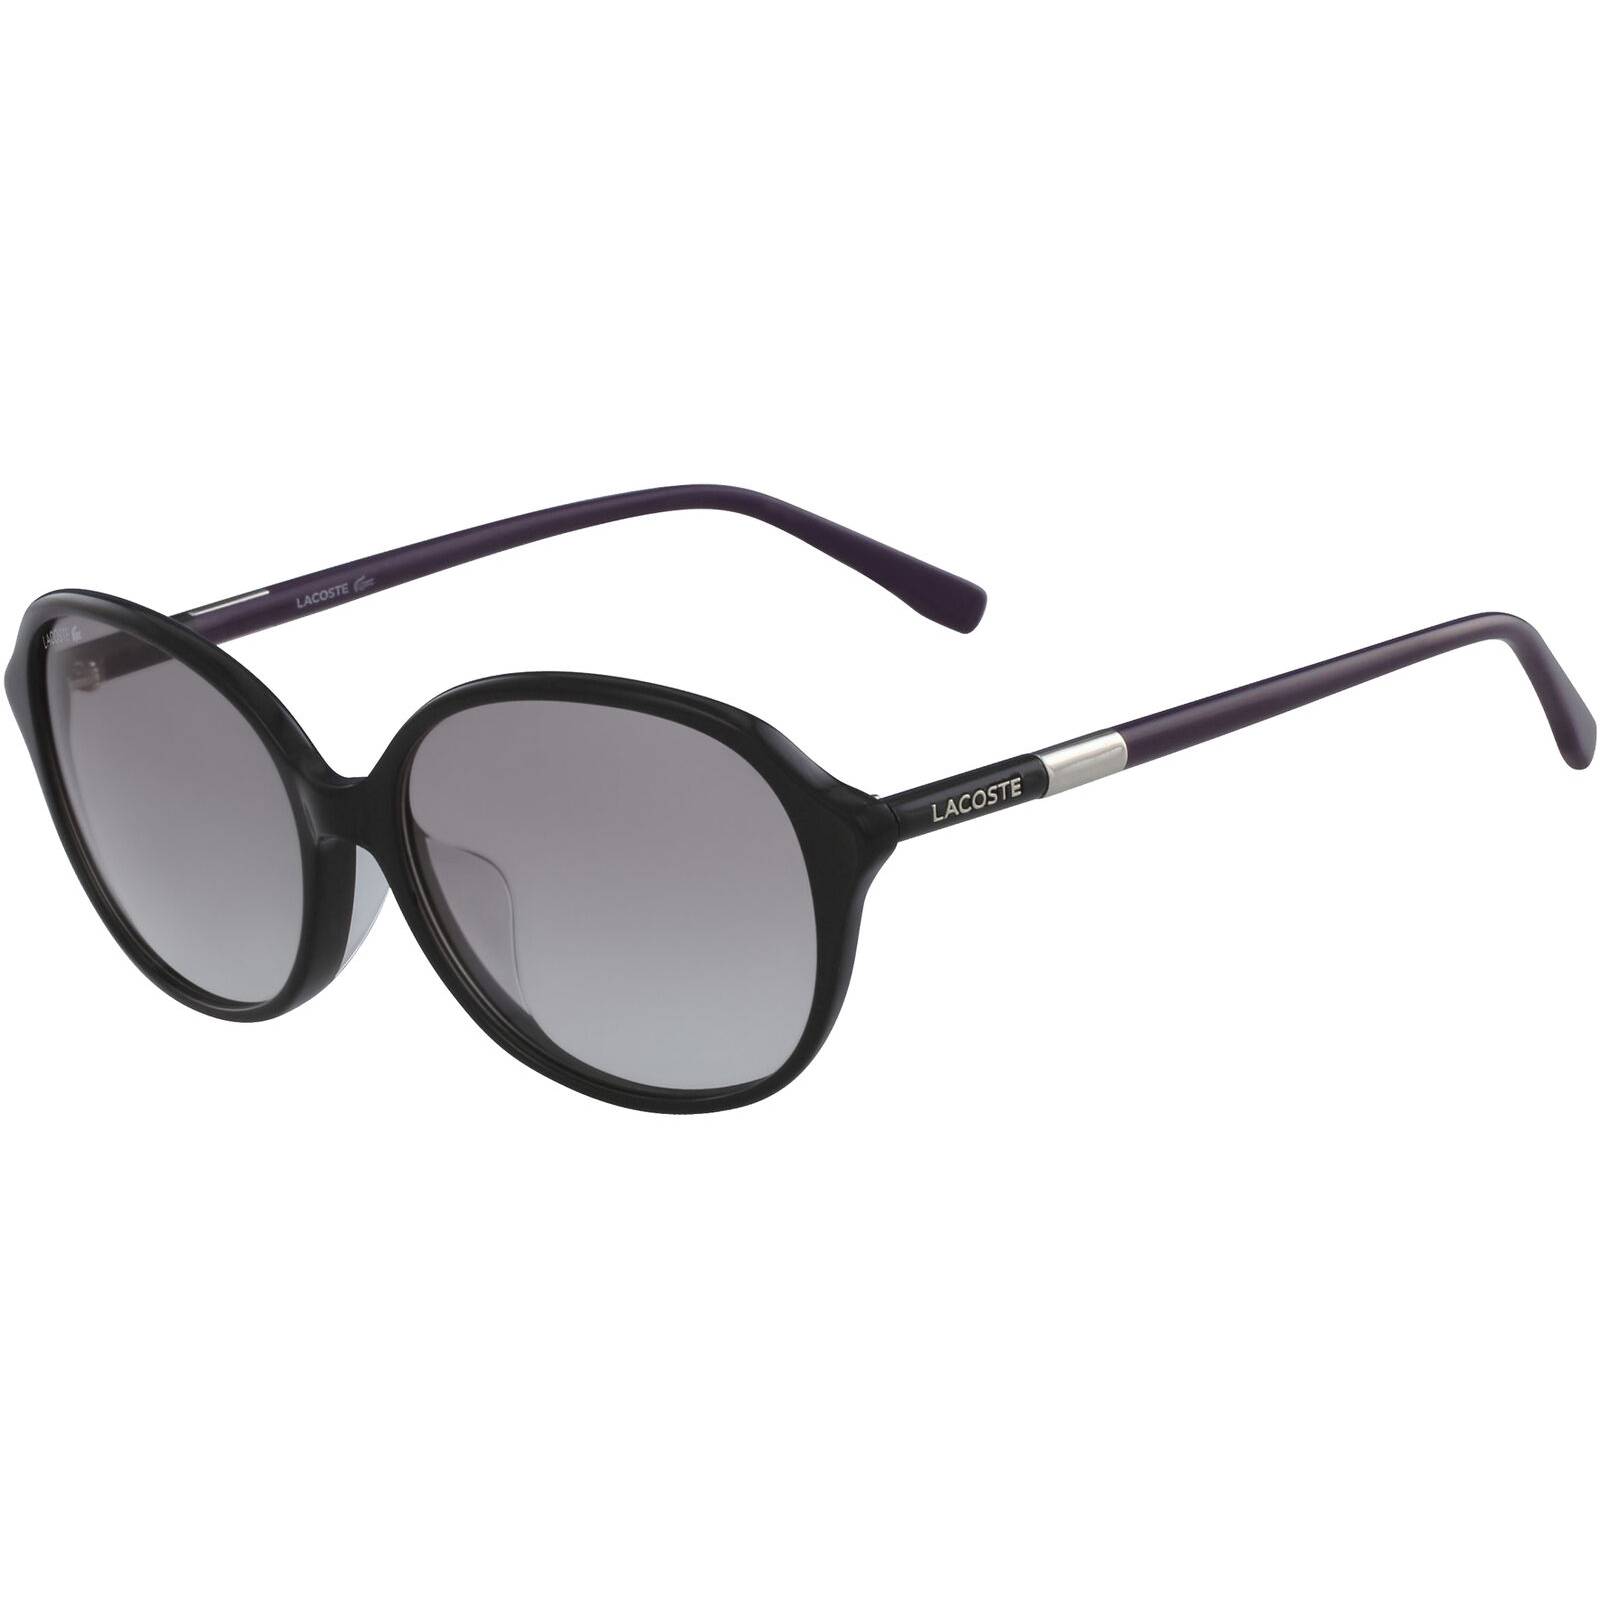 Lacoste Women Vintage Style Oval Sunglasses Gradient Lenses L854SA 001 57